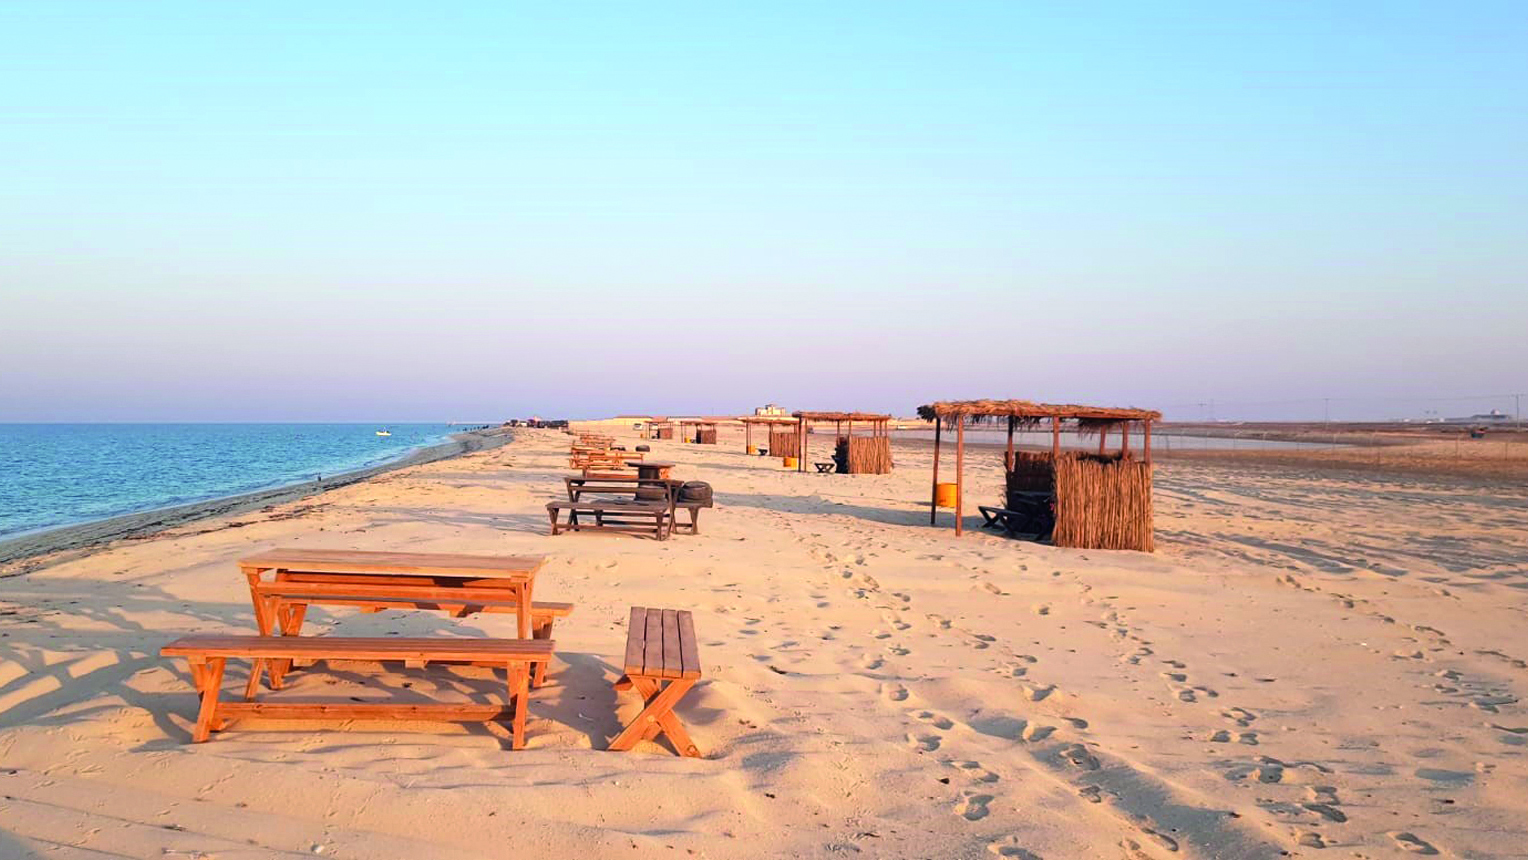 Al Shamal to soon open a beach for women